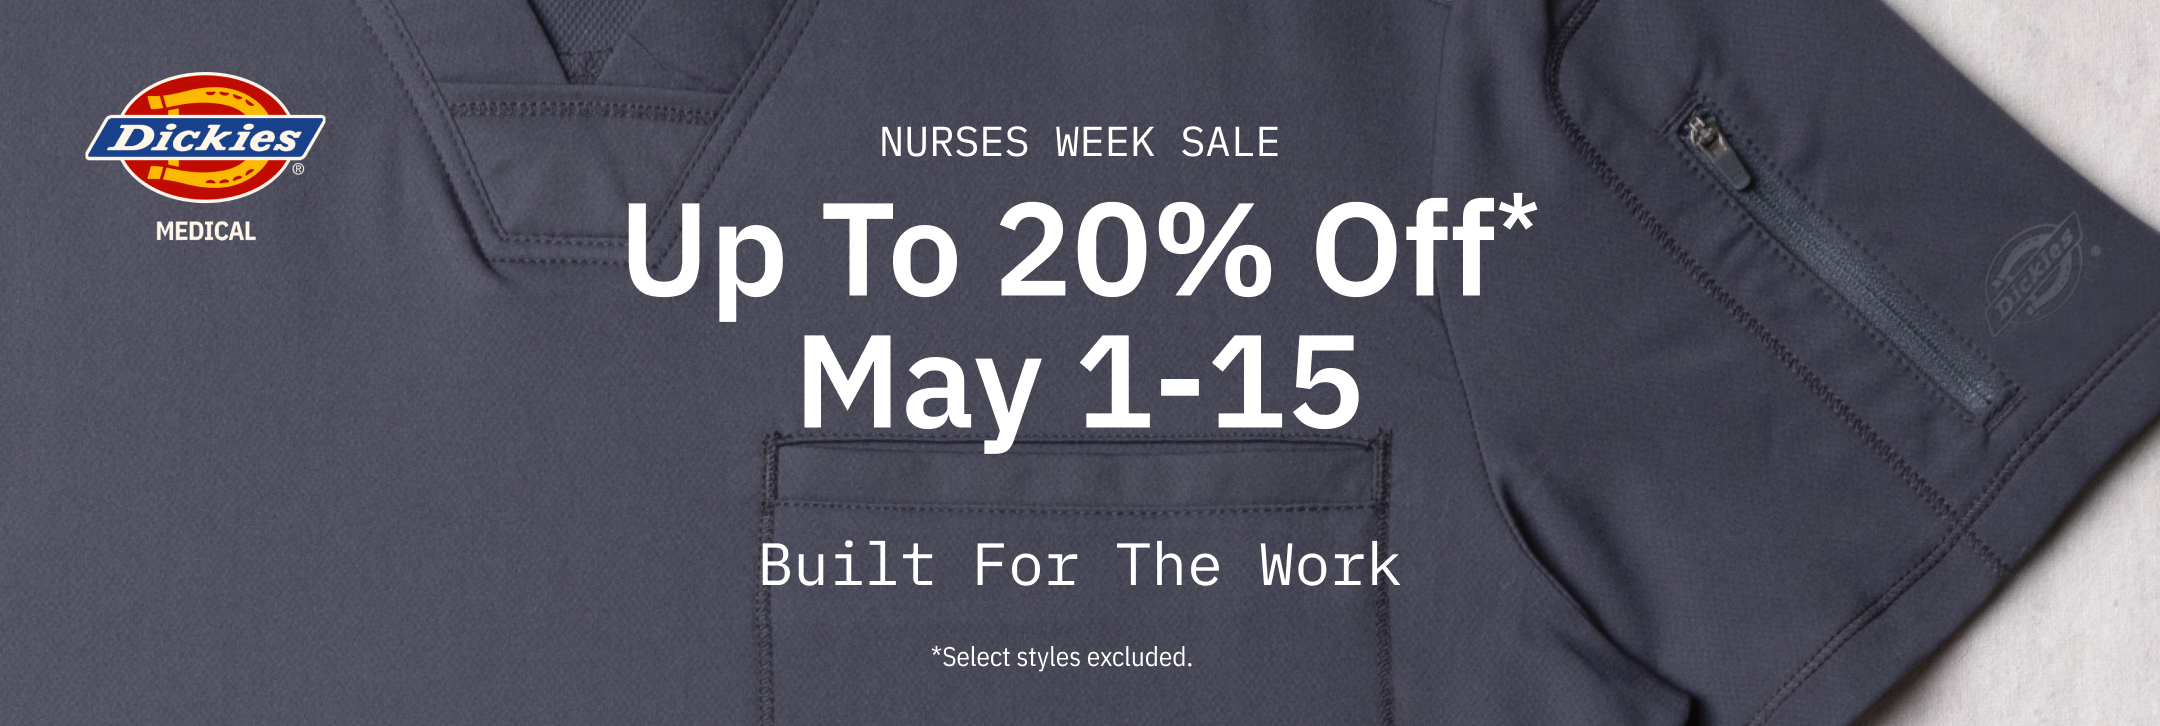 dickies nurses week sale: up to 20% off* on select styles